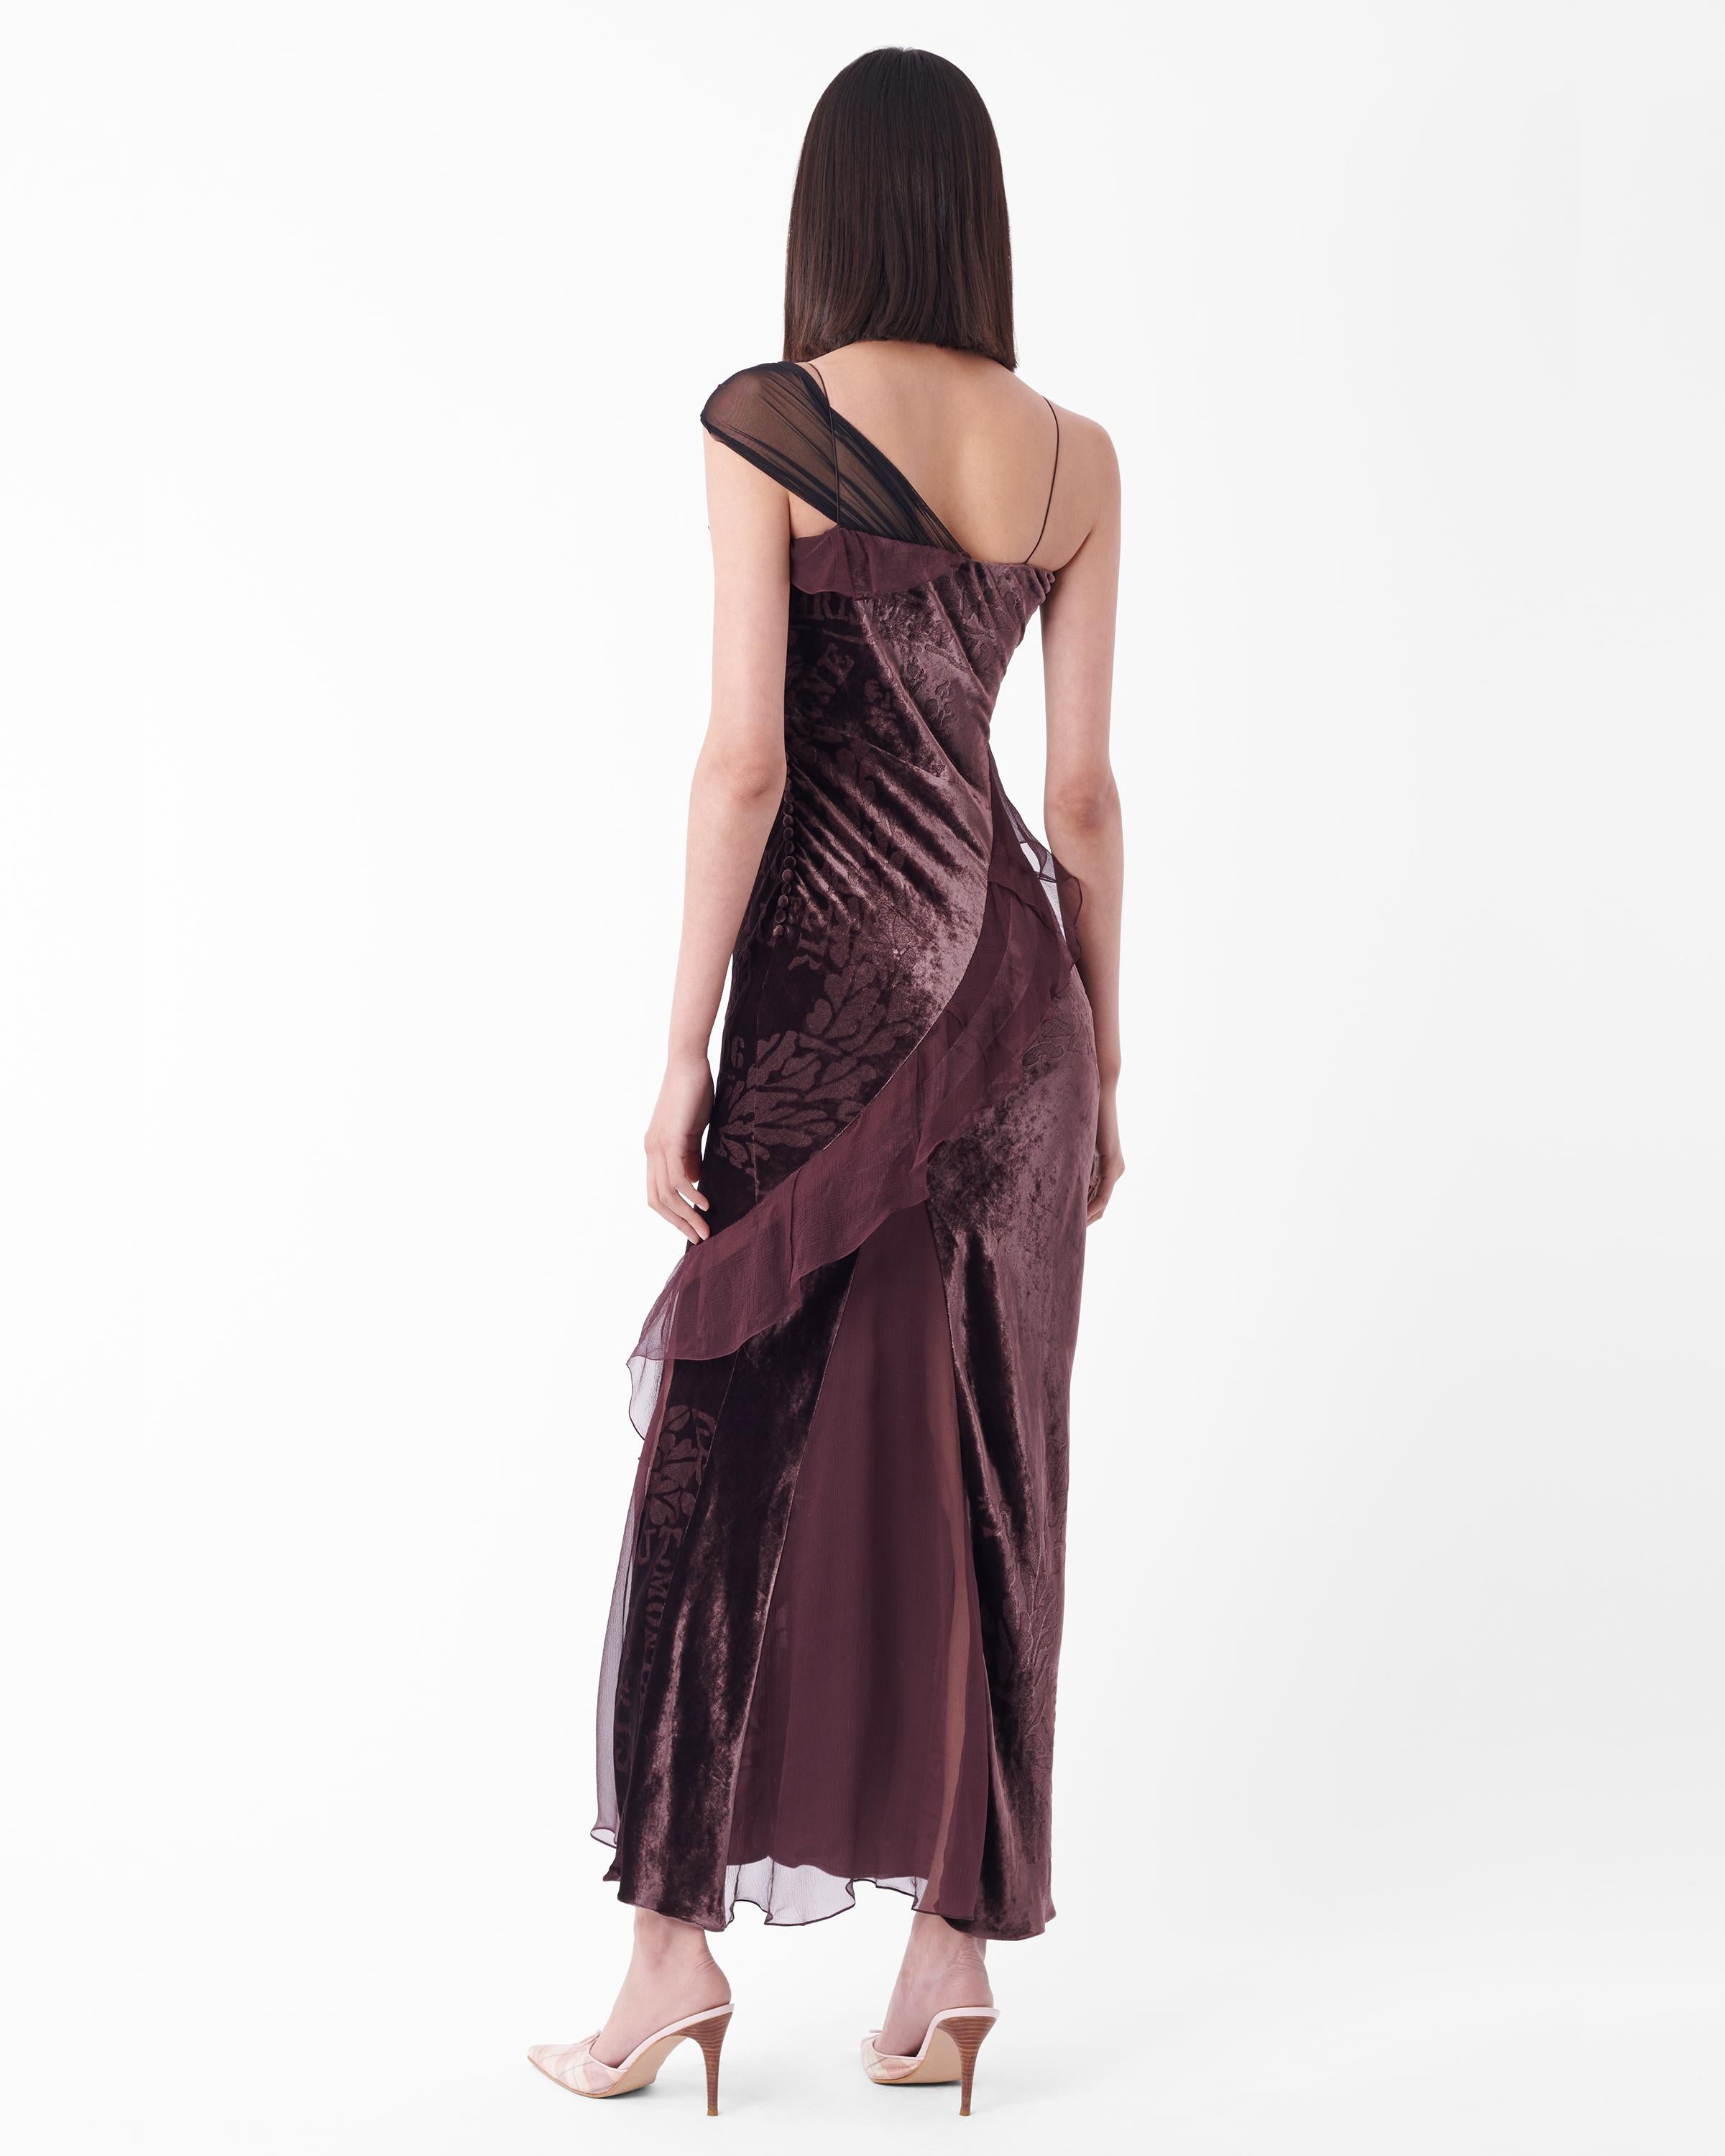 Christian Dior Herbst-Winter-Kleid 2006, wie auf dem Laufsteg zu sehen. Mit schmalen Trägern, einseitiger Schulterpartie aus Mesh, asymmetrisch verlaufendem Rüschendetail, bedrucktem Samtkörper und klassischem Dior-Knopfverschluss. In